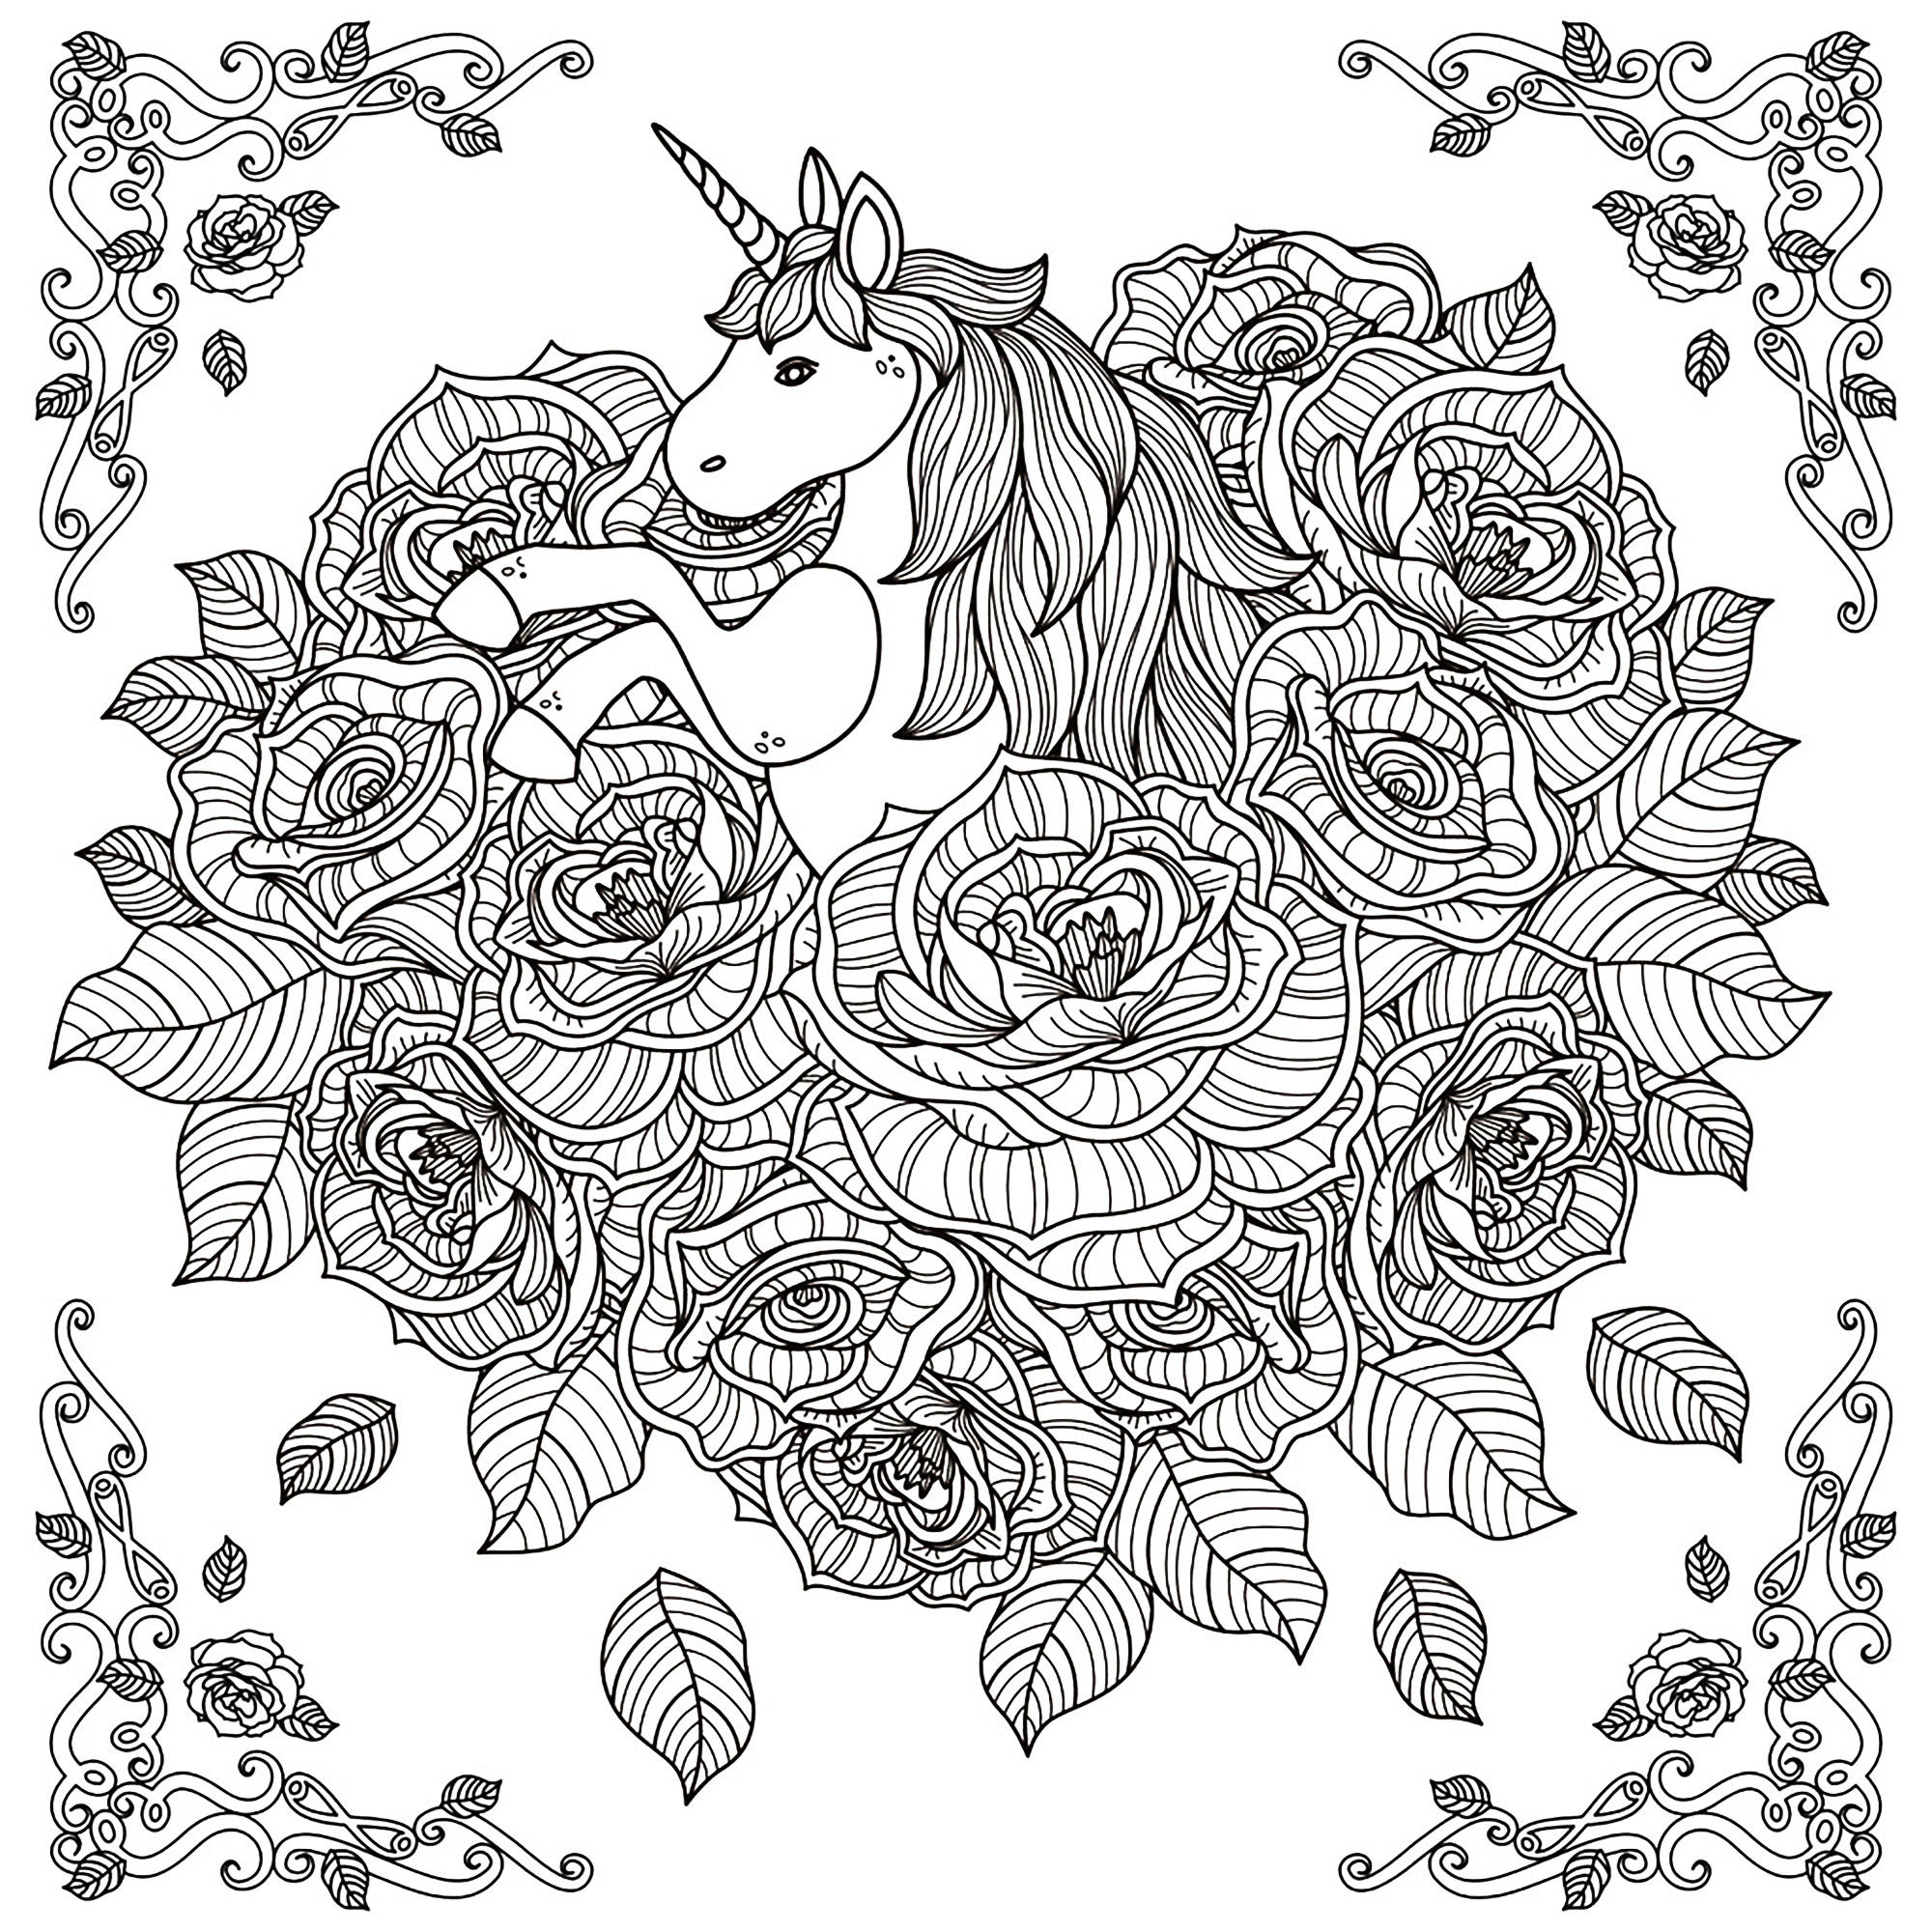 image=unicorns coloring pages adults unicorn mandala by kchung 1